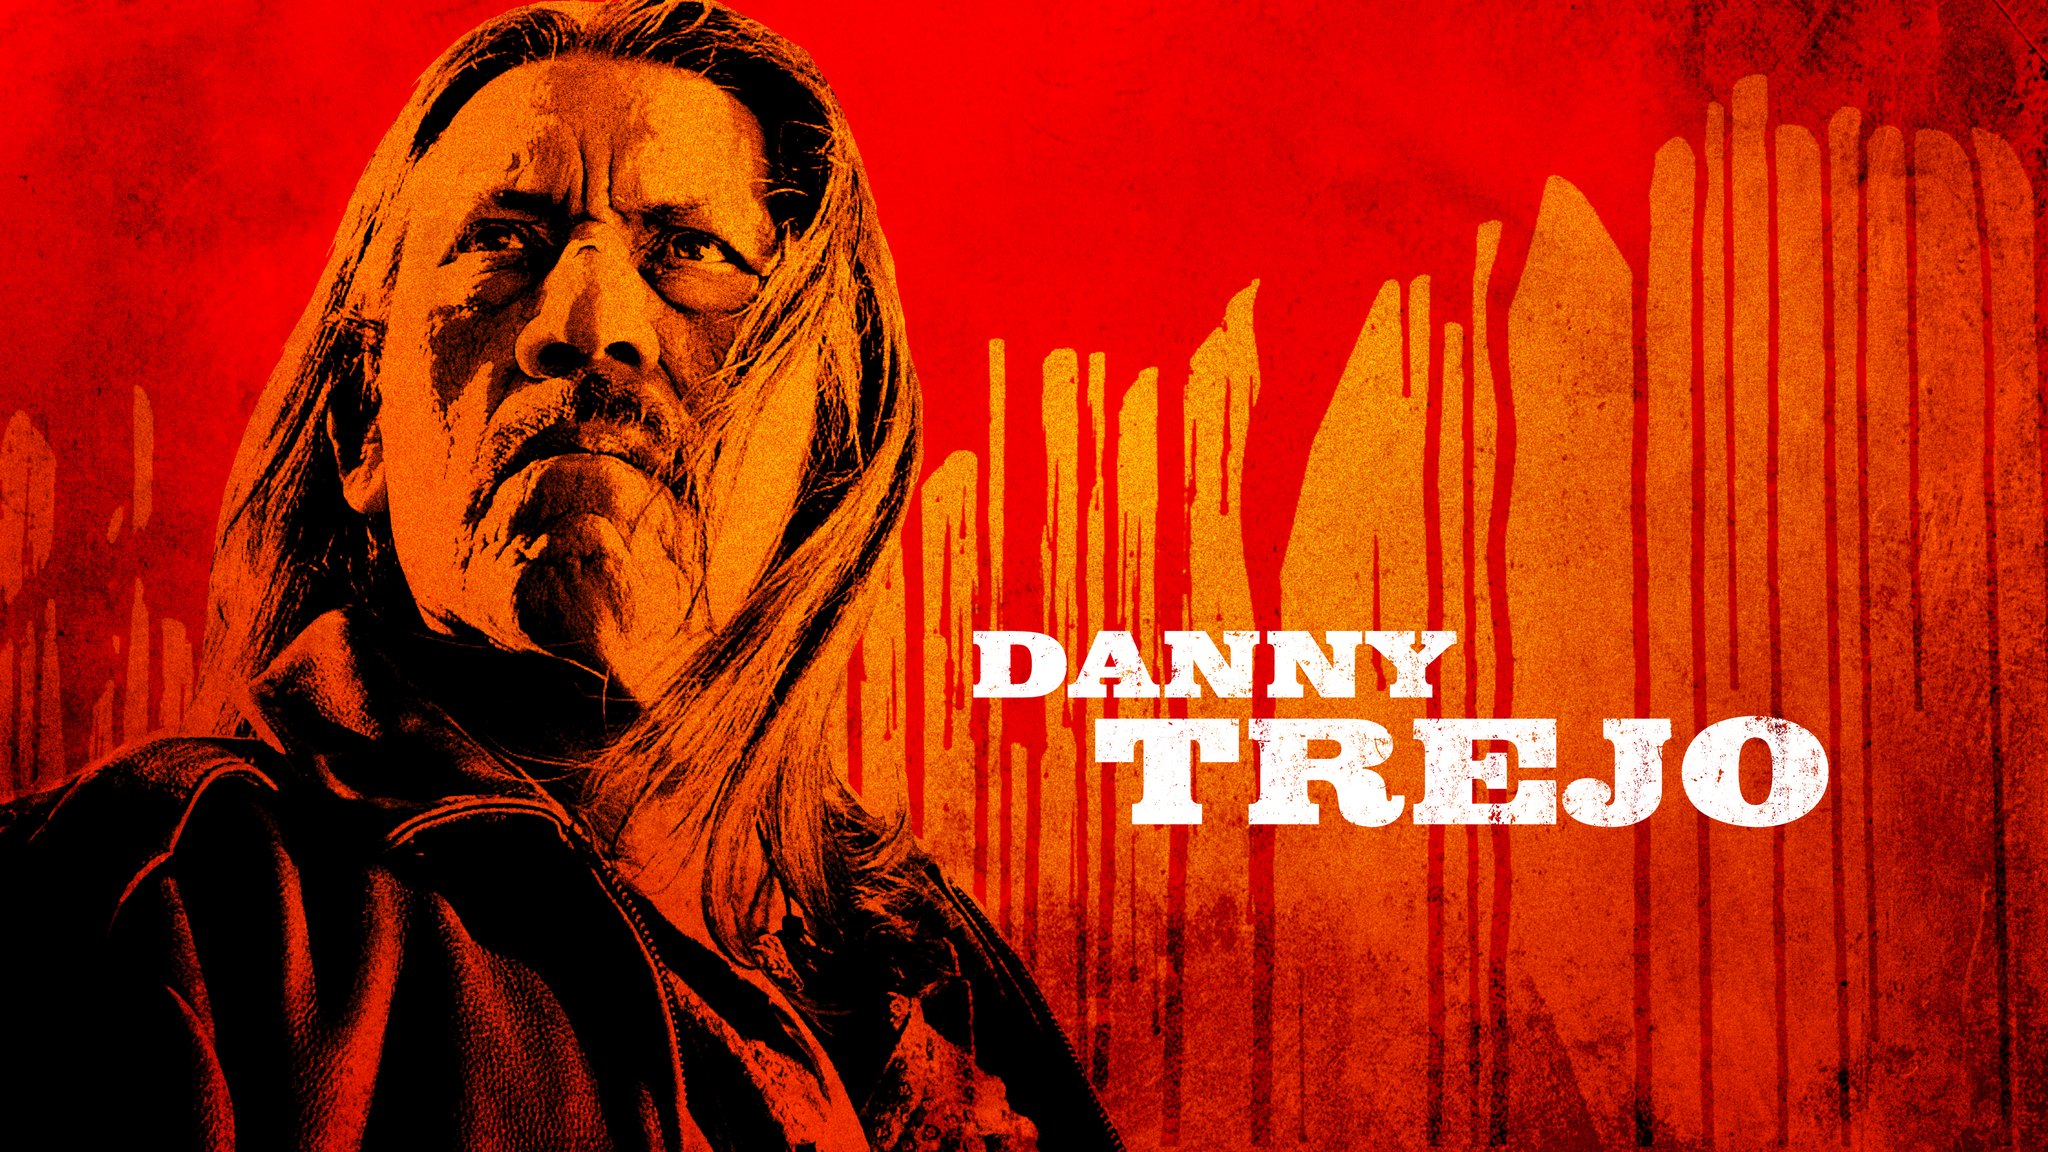 Danny Trejo in Machete (2010)